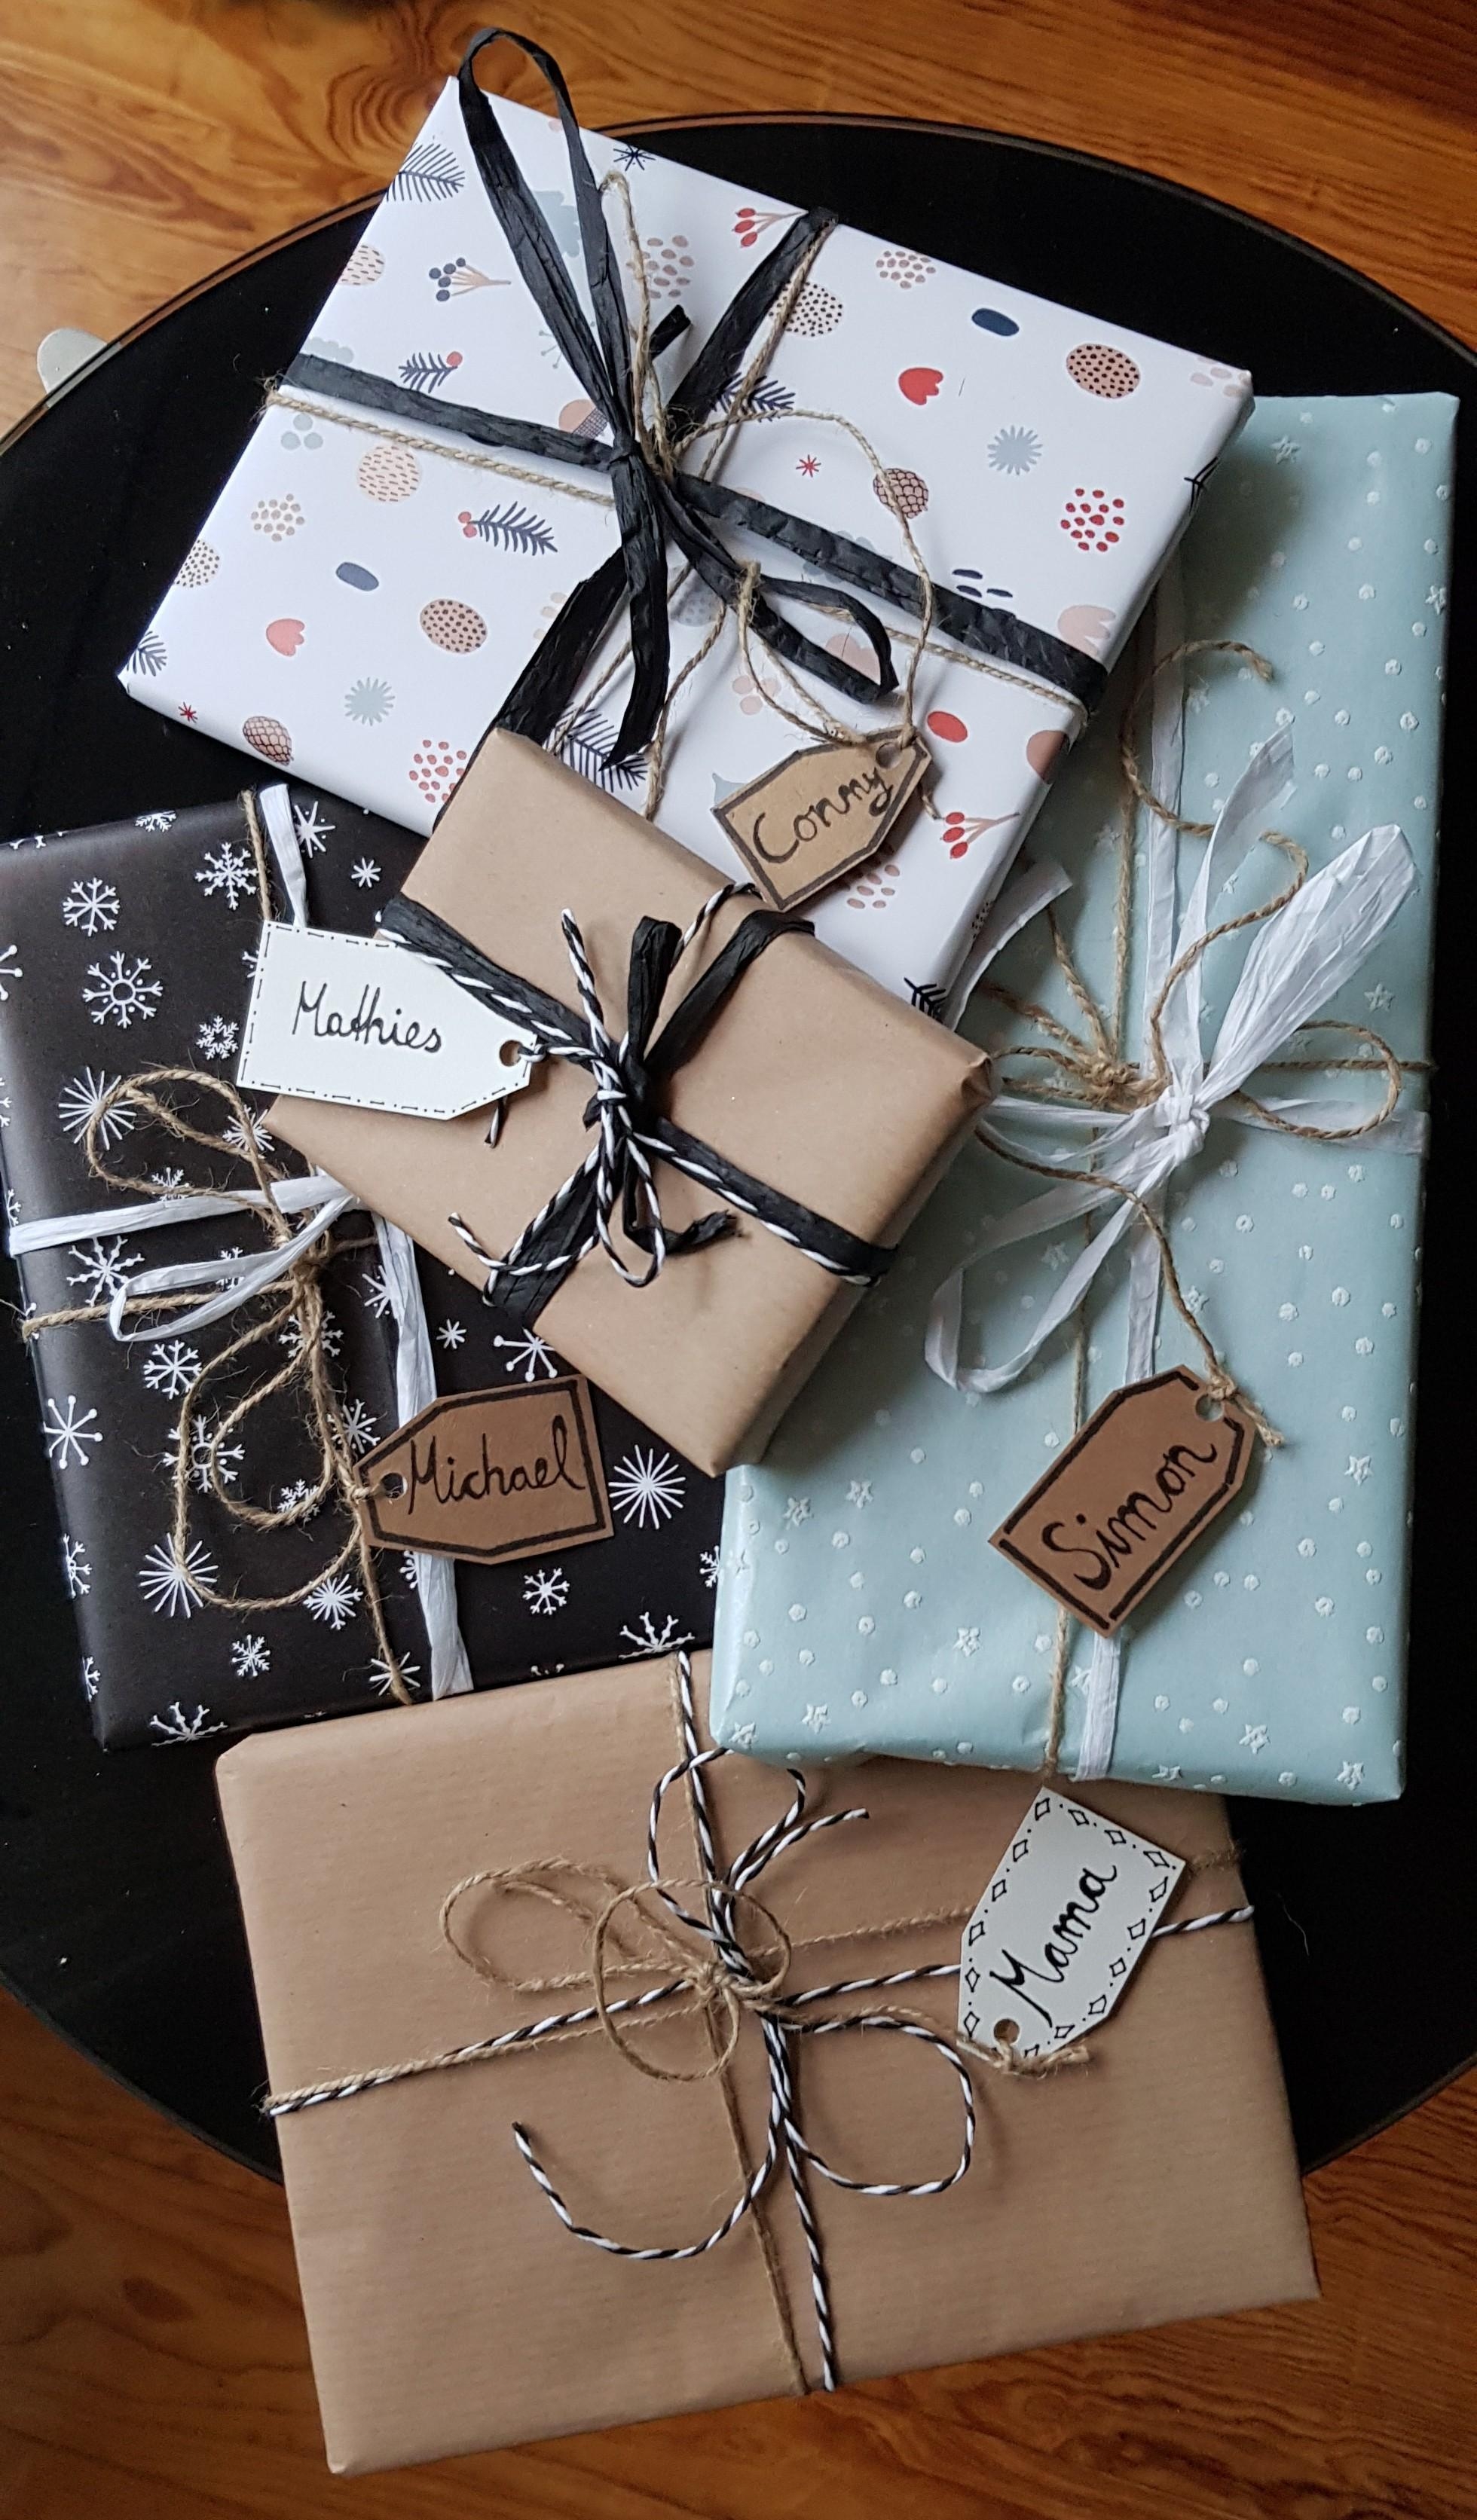 Ich liebe es, Geschenke in der Weihnachtszeit einzupacken! #diy #geschenkeverpacken #geschenkpapier #weihnachtsgeschenk